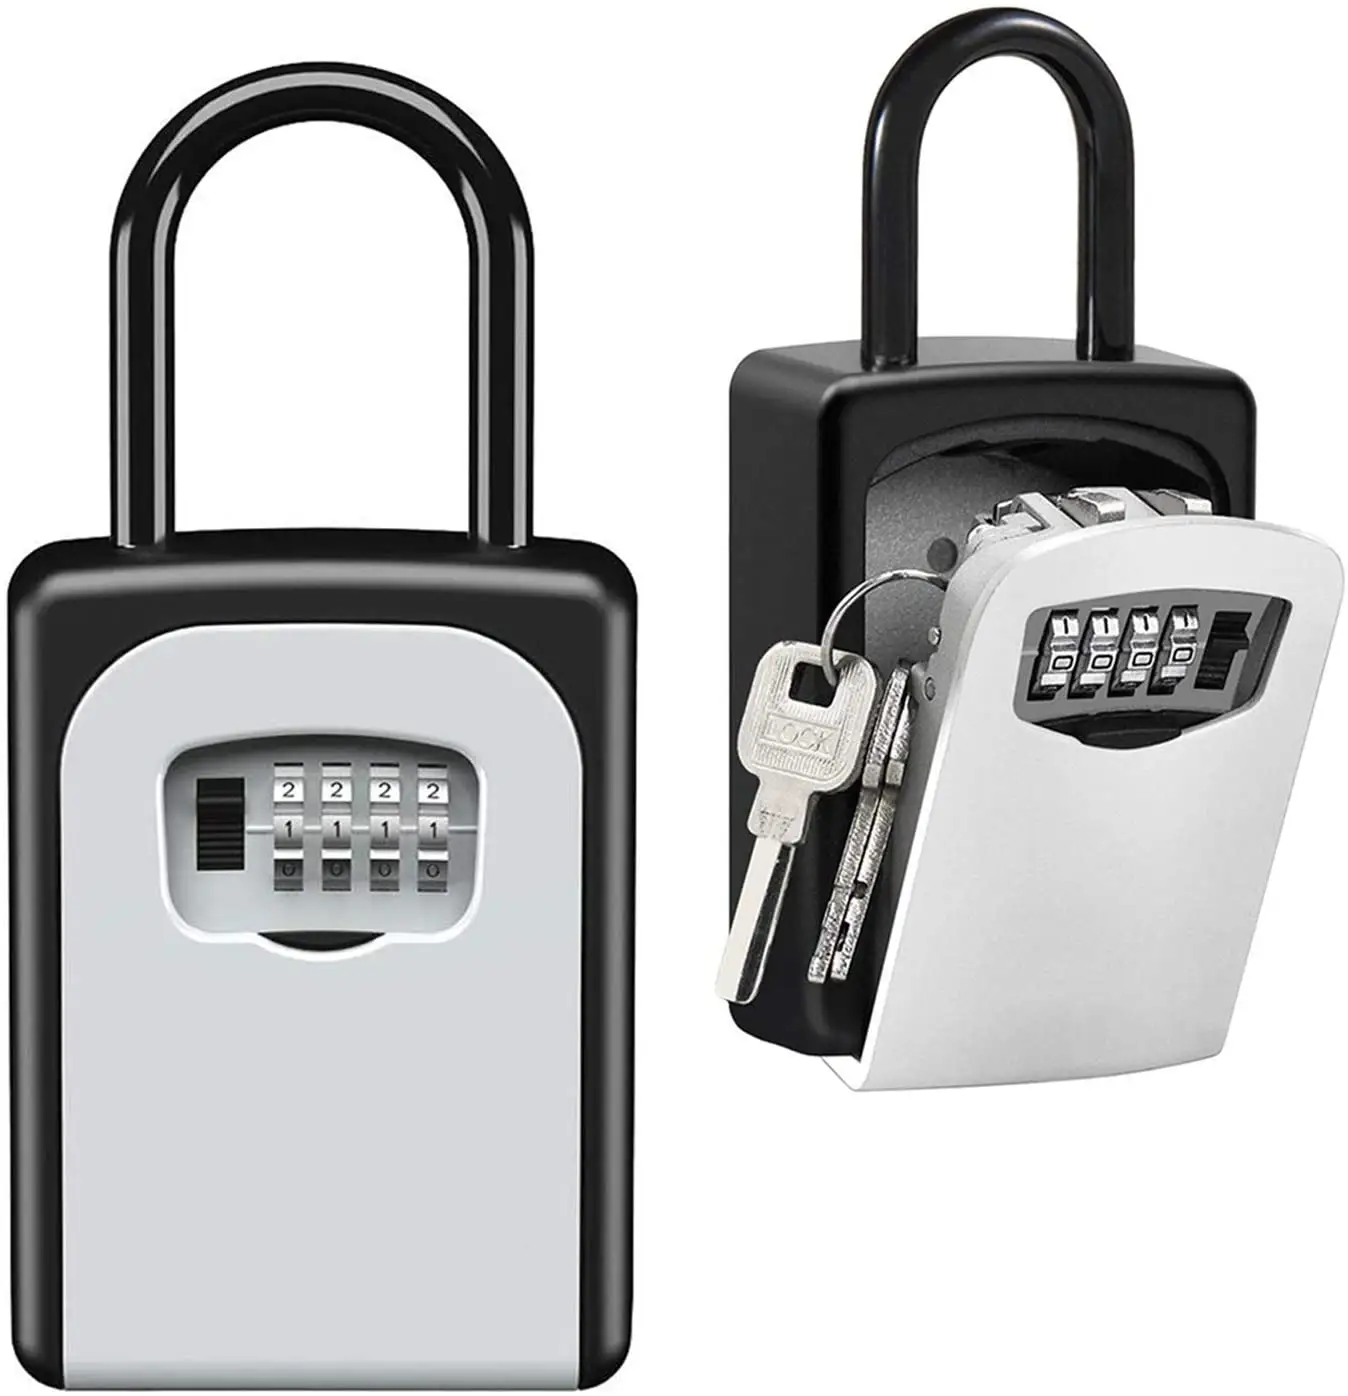 Consegna veloce Parete di Stoccaggio Di sicurezza Nascondere Sigma digitale Combinazione chiave di sicurezza di blocco scatola